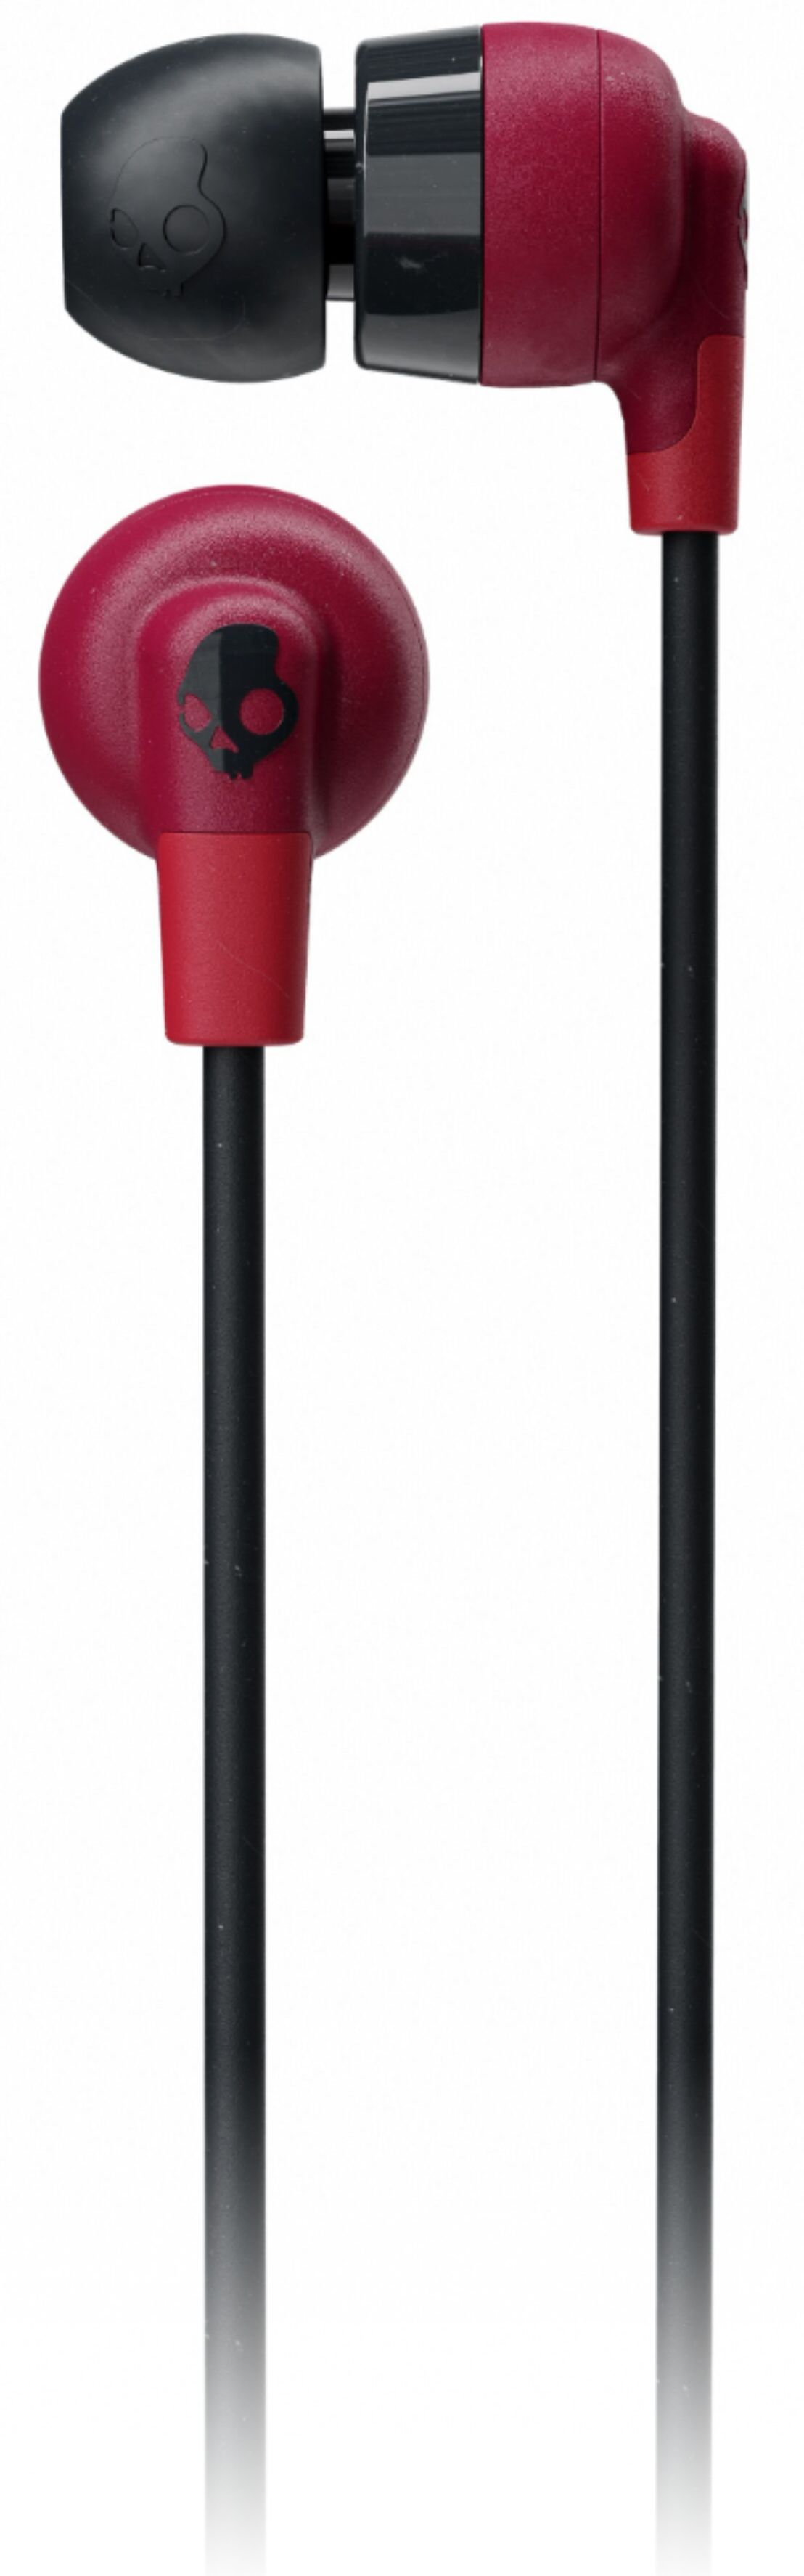 Best Buy: Skullcandy Ink'D+ Wireless In-Ear Headphones Moab Red 